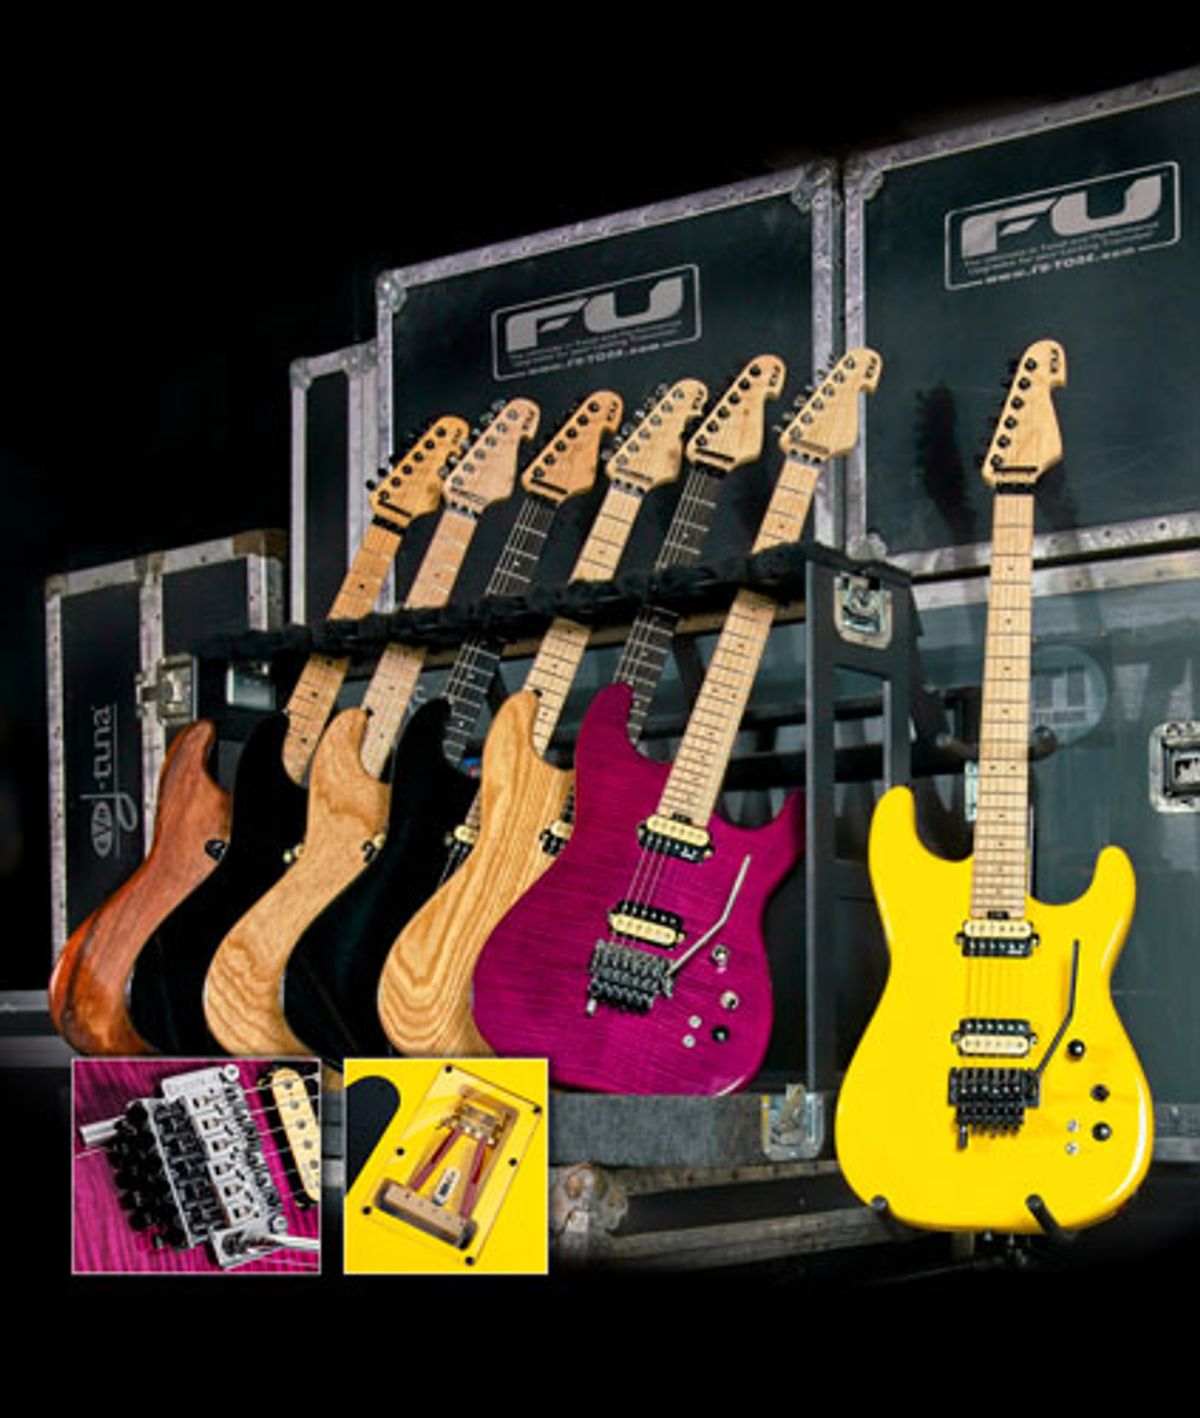 FU-Tone Introduces FU Pro Line of Guitars